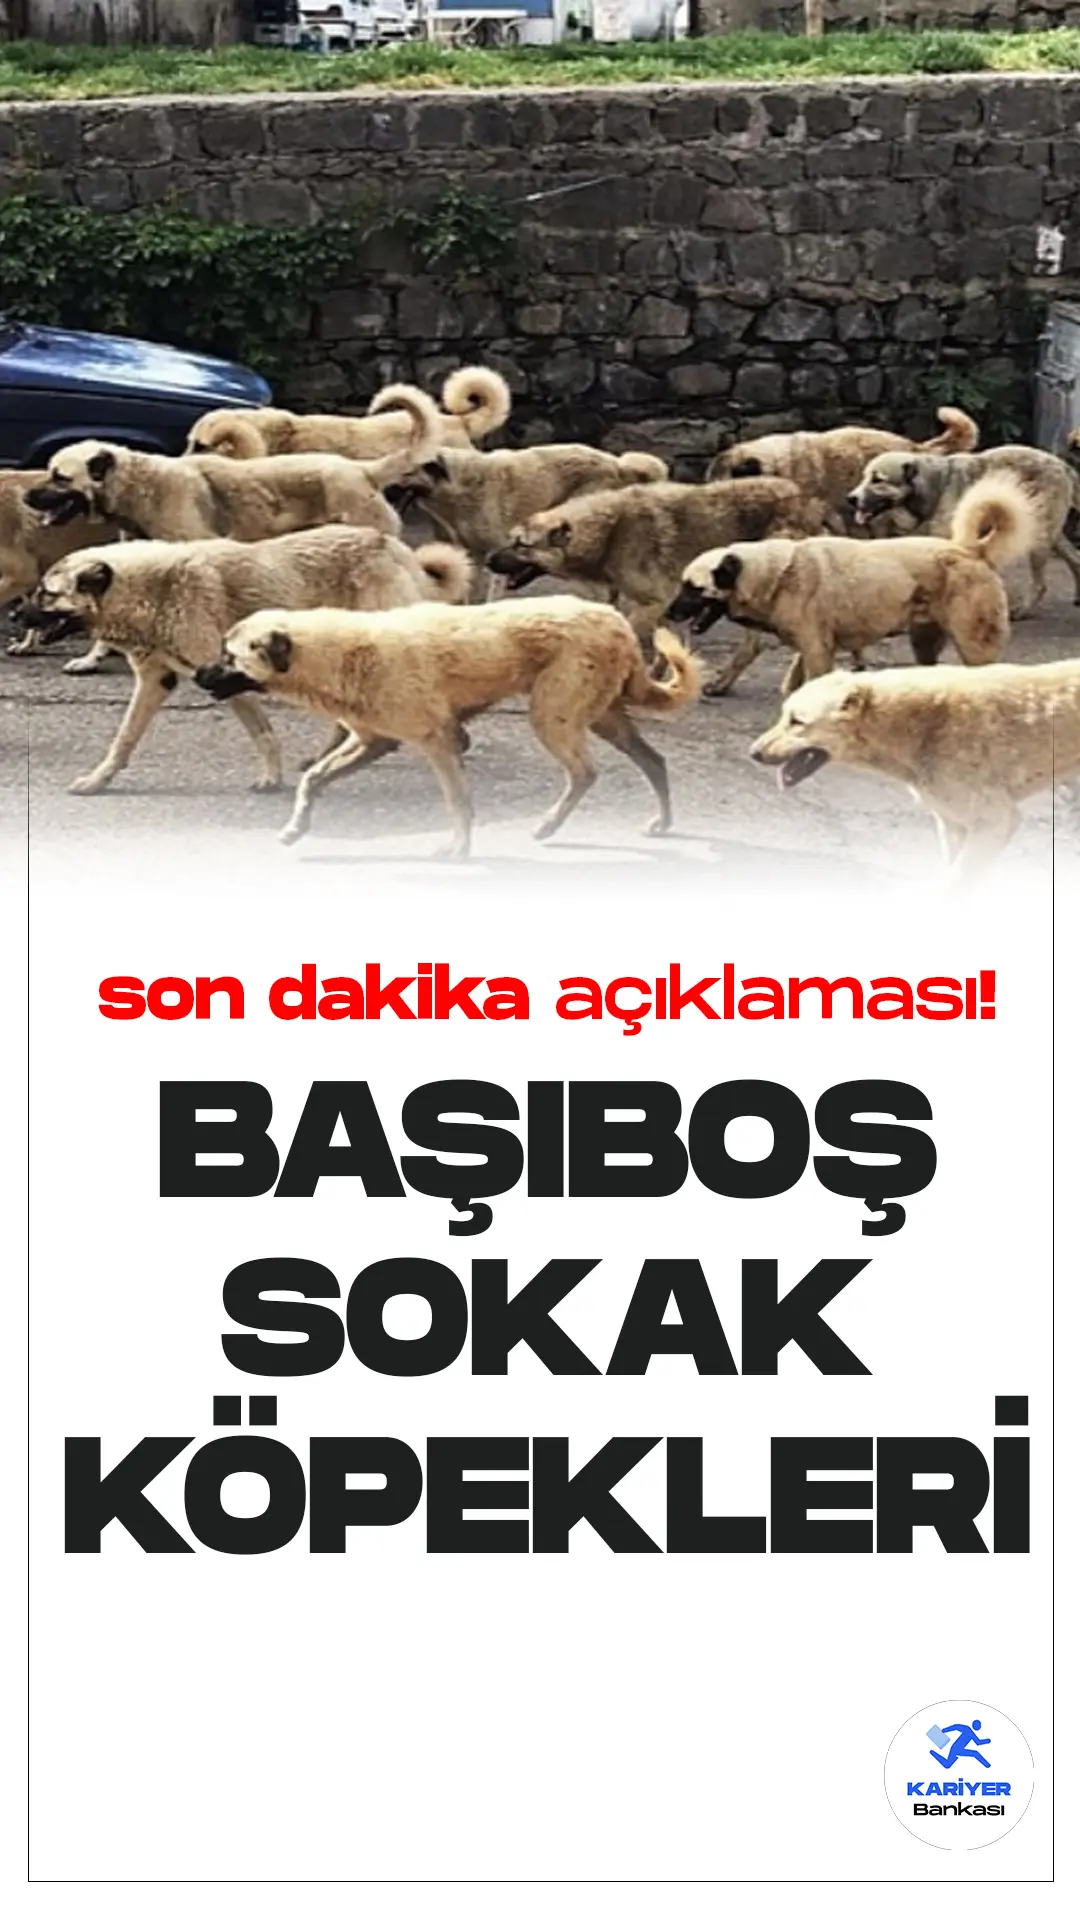 Tarım ve Orman Bakanı İbrahim Yumaklı, Türkiye’deki başıboş sokak köpekleri sorununa ilişkin önemli açıklamalarda bulundu.